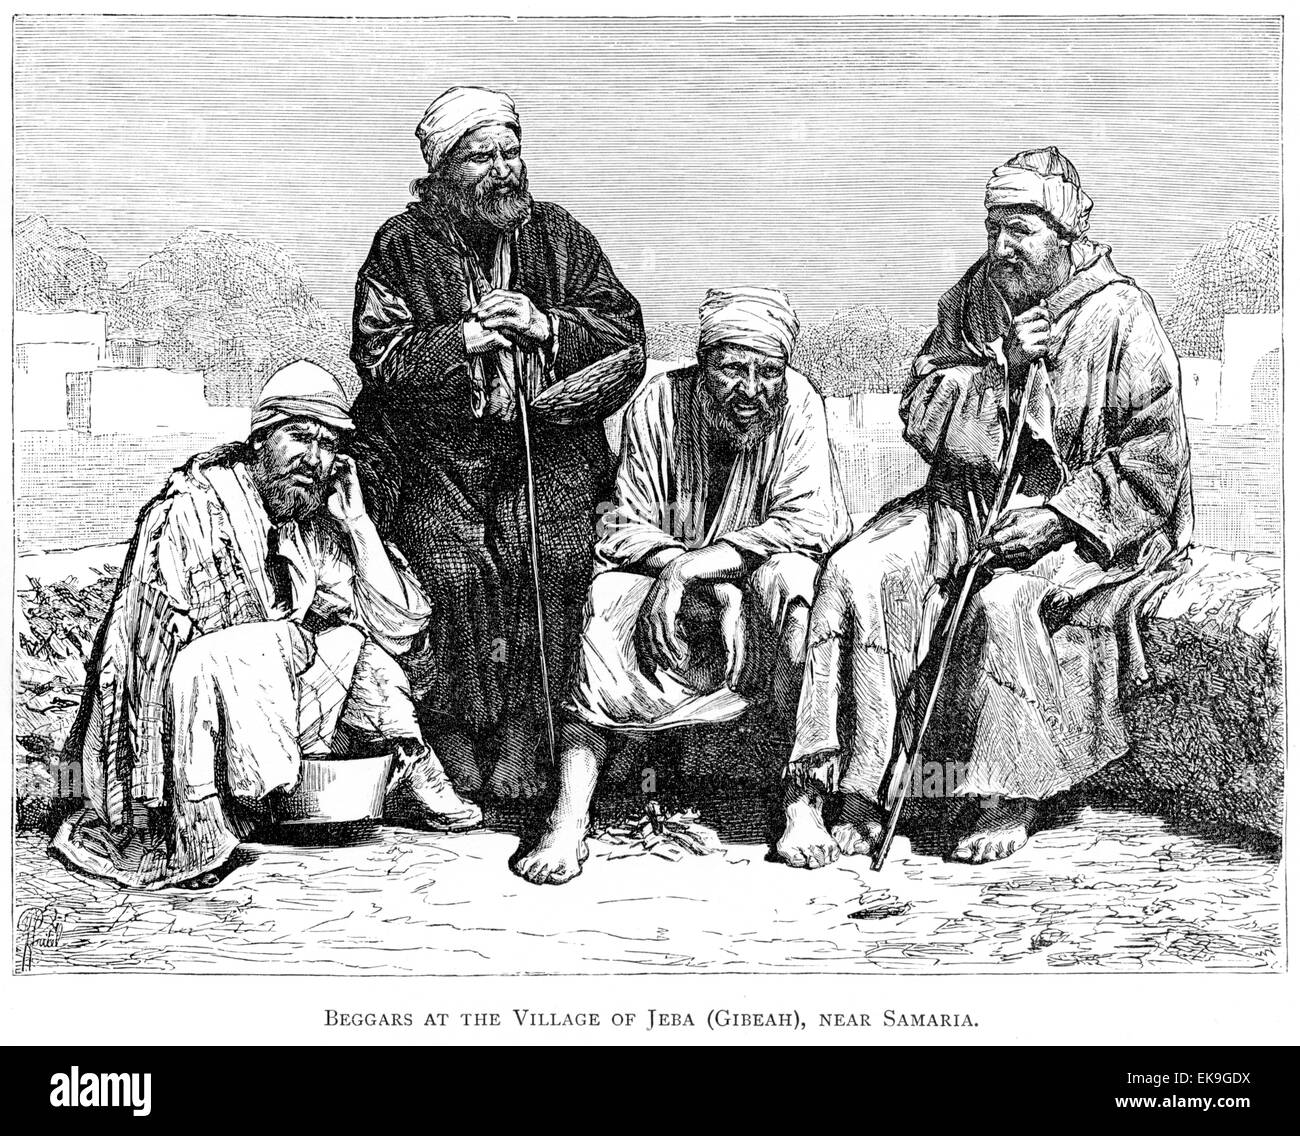 Gravure de mendiants au village de Jeba (Gibeah), près de Samarie, numérisée à haute résolution à partir d'un livre imprimé en 1889. Cru libre de droit d'auteur. Banque D'Images